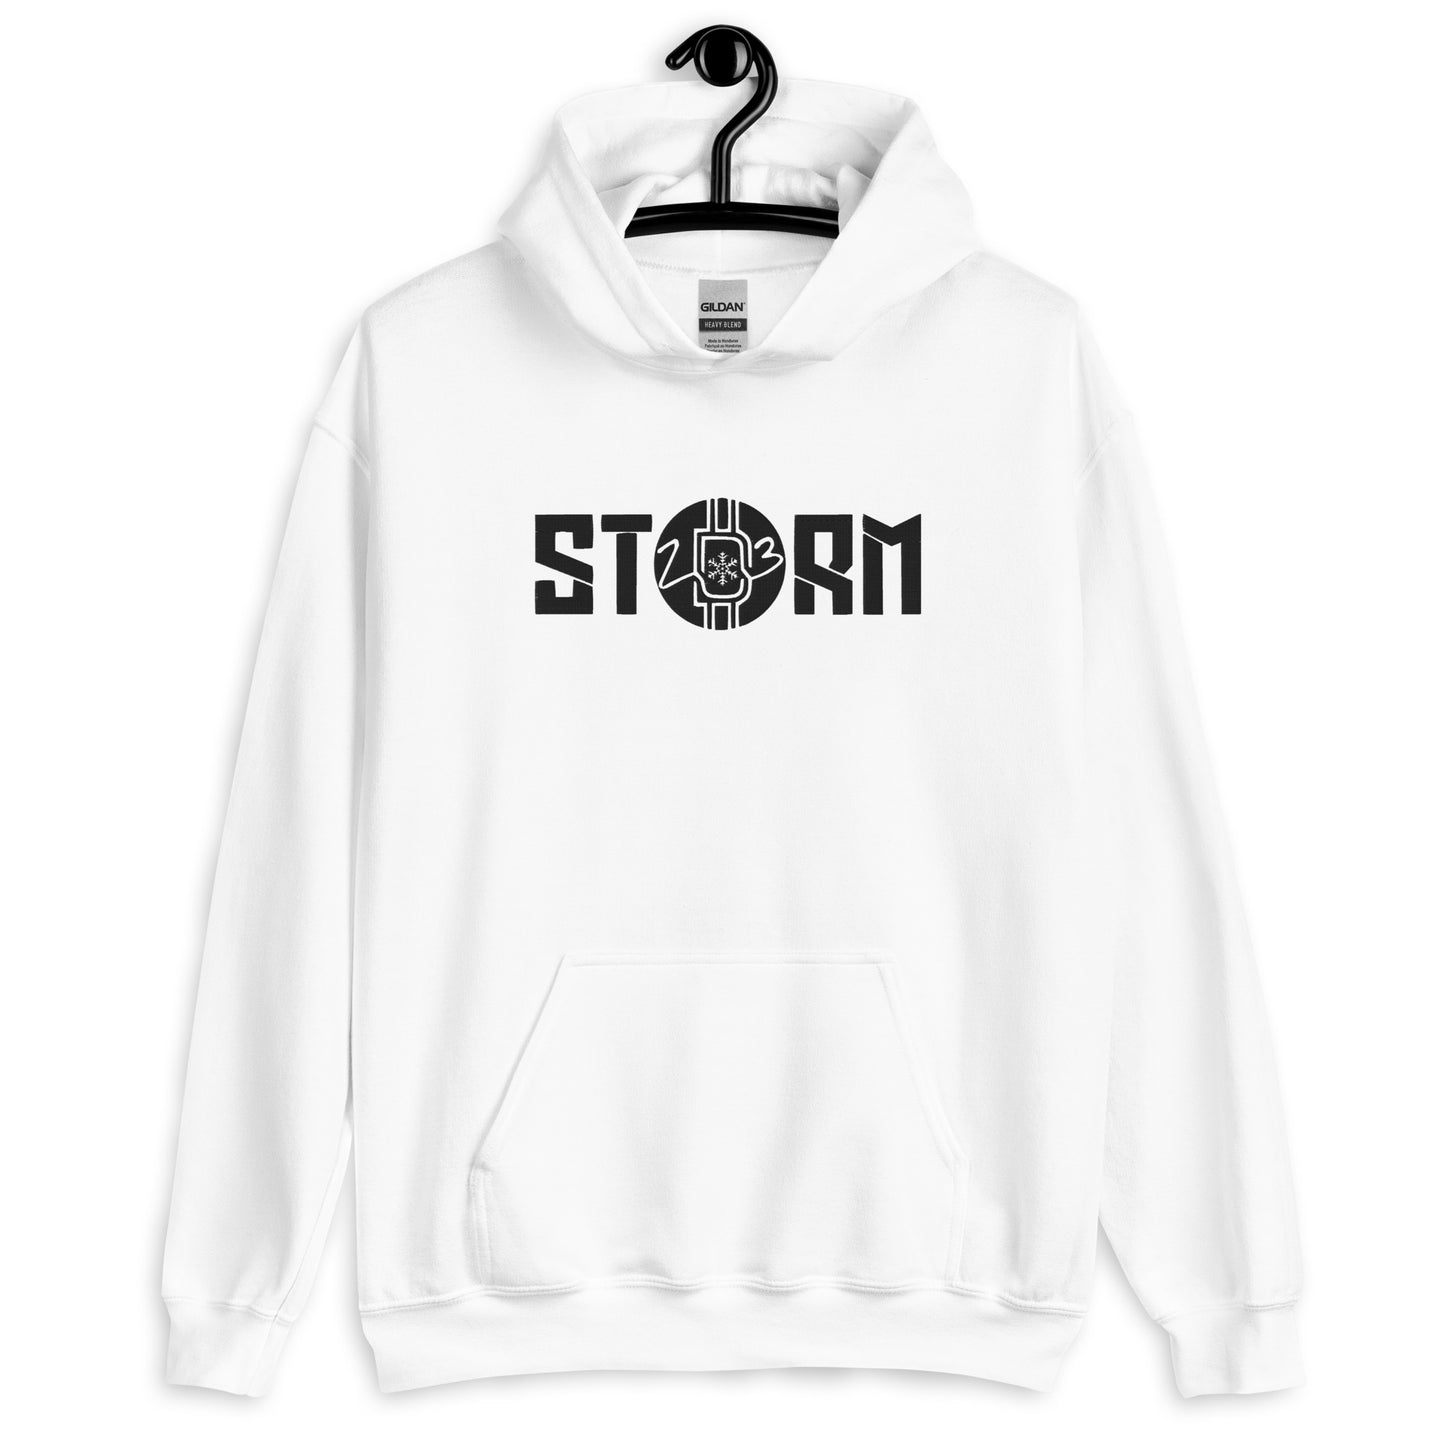 "STORM" Hoodie Black On White